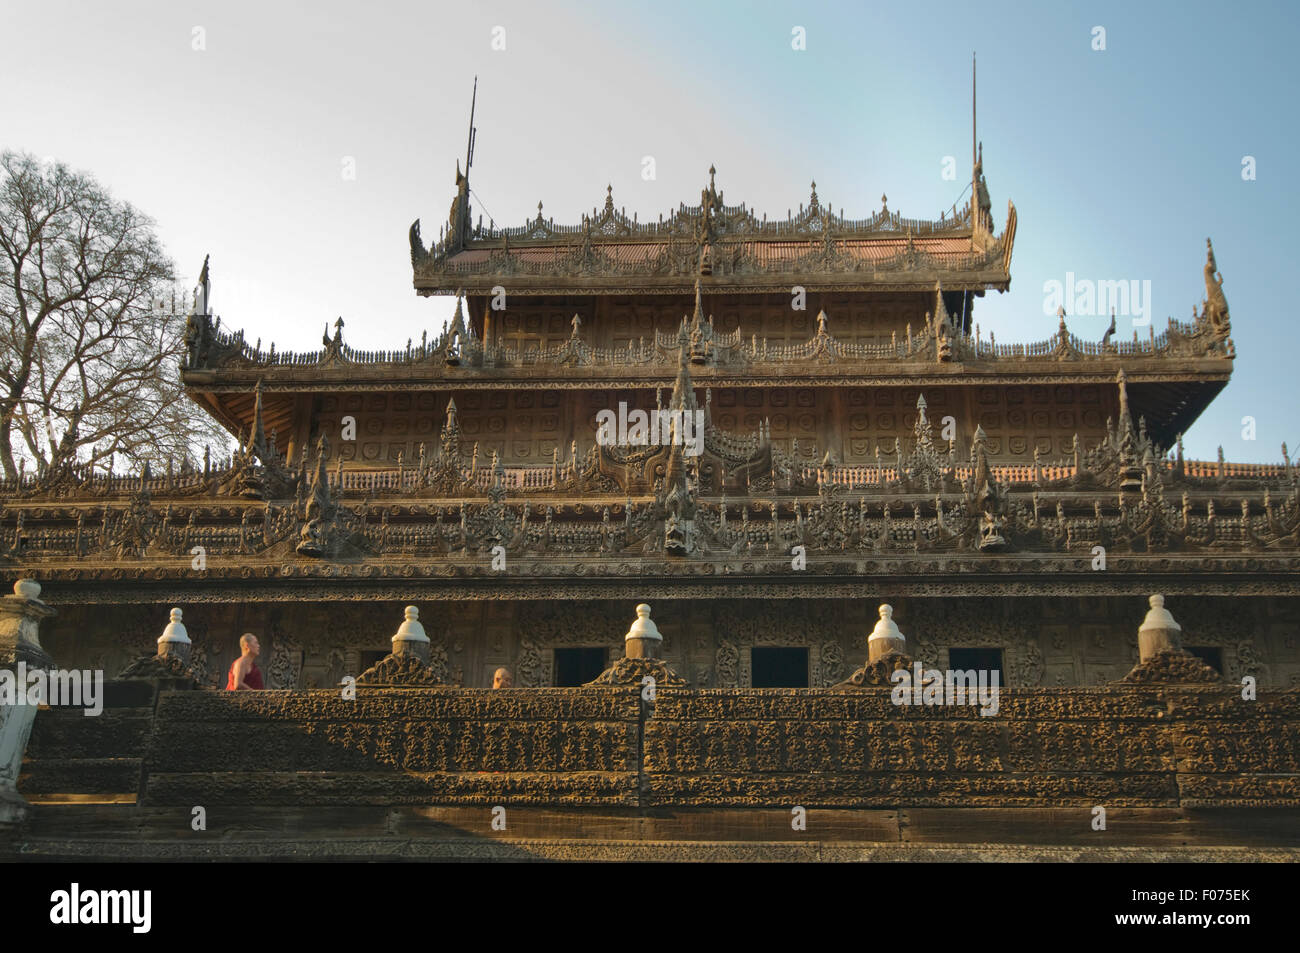 Asien, MYANMAR (BURMA), Mandalay, Shwenedaw Kyaung (Golden Palace Kloster, gebaut von König Mindon 1878), Teak buddhistisches Kloster Stockfoto